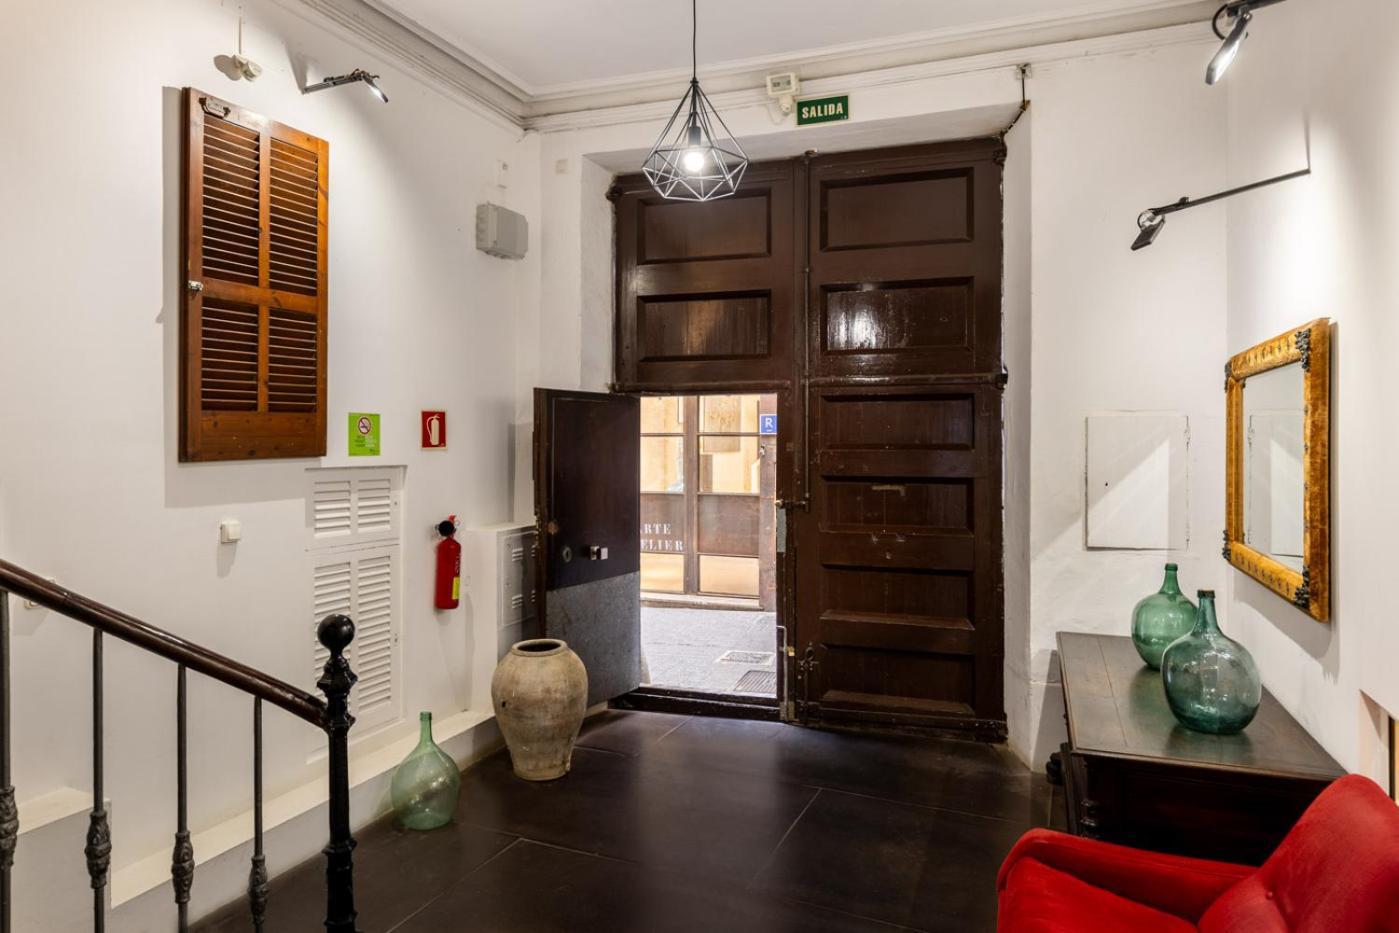 Antiguo Brondo Selfcheck-In Smart Rooms Palma de Mallorca Dış mekan fotoğraf